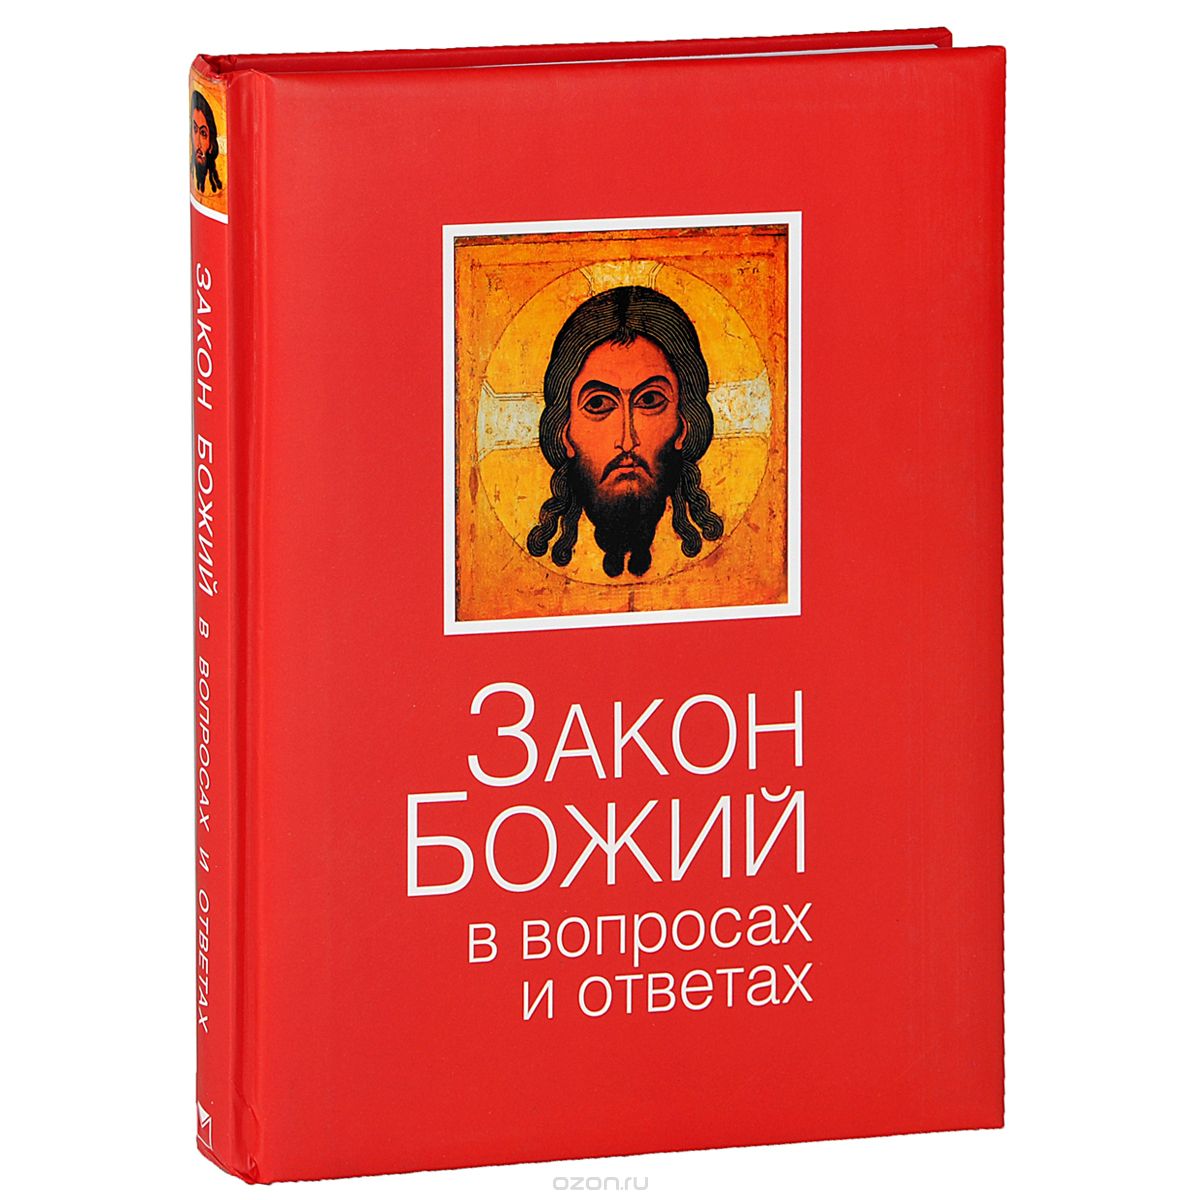 Скачать книгу "Закон Божий в вопросах и ответах, Владимир Зоберн"